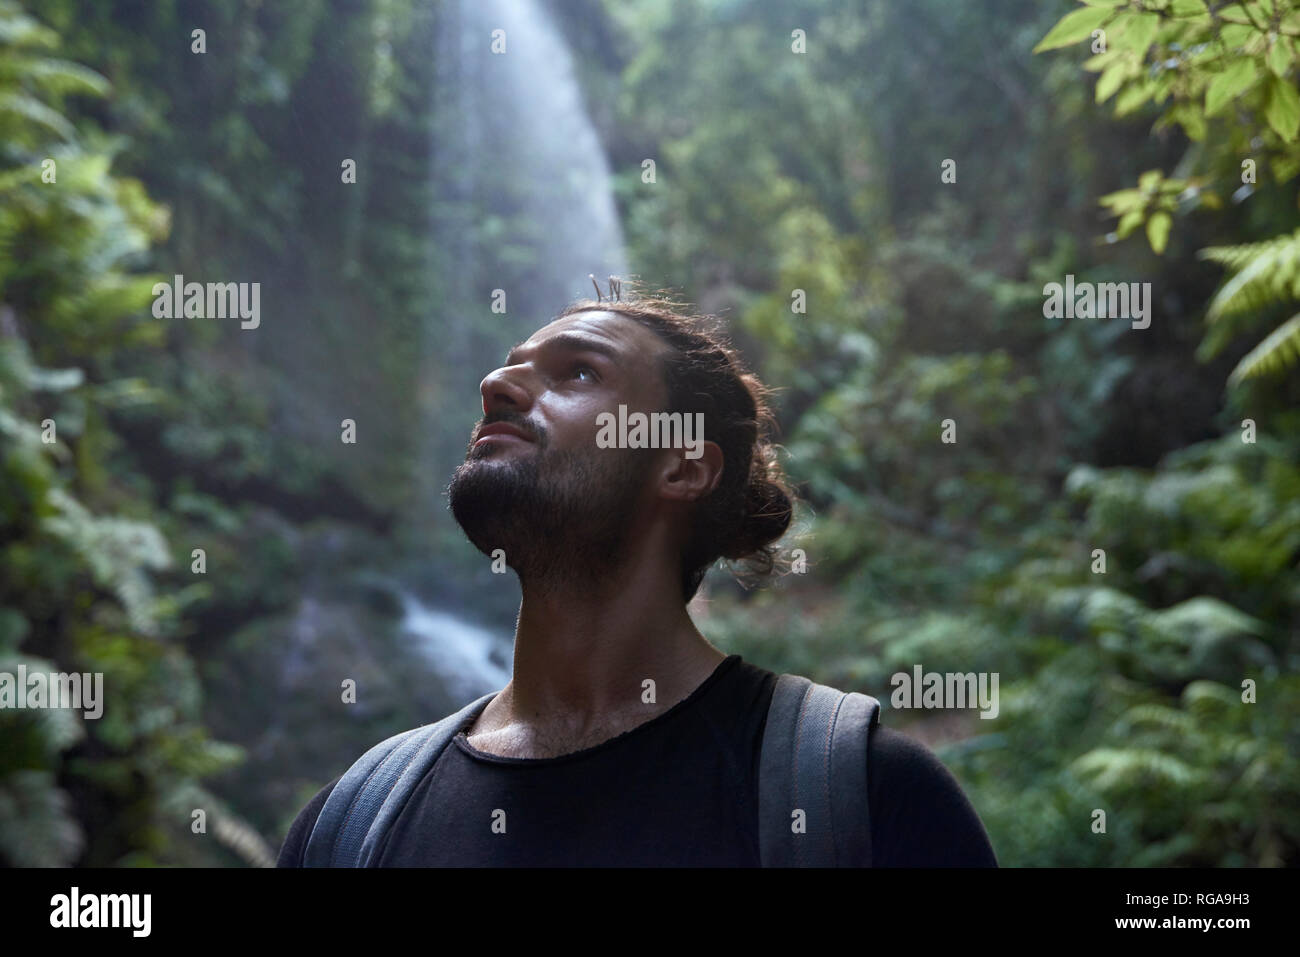 España, Islas Canarias, La Palma, cerca de hombre barbado cerca de una cascada en el bosque Foto de stock